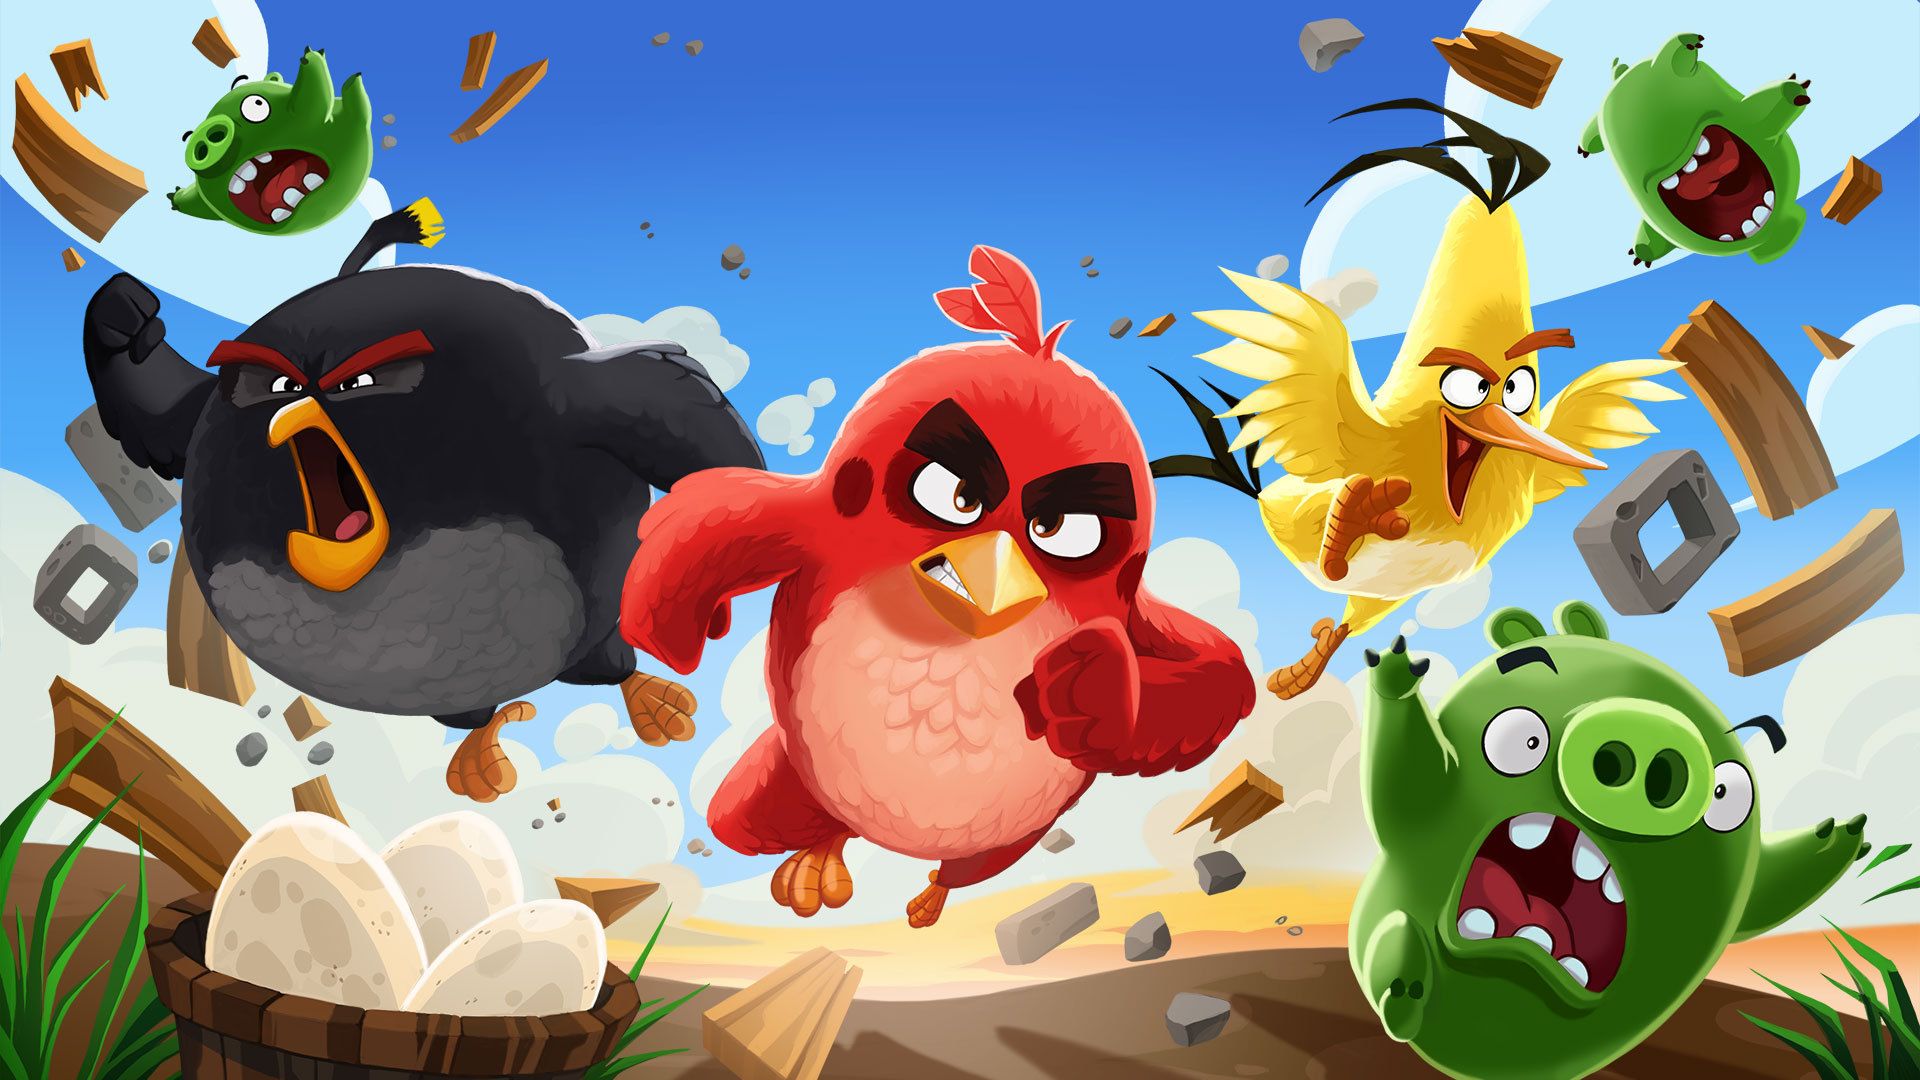 Angry Birds New Version HD desktop wallpaper, Widescreen, High